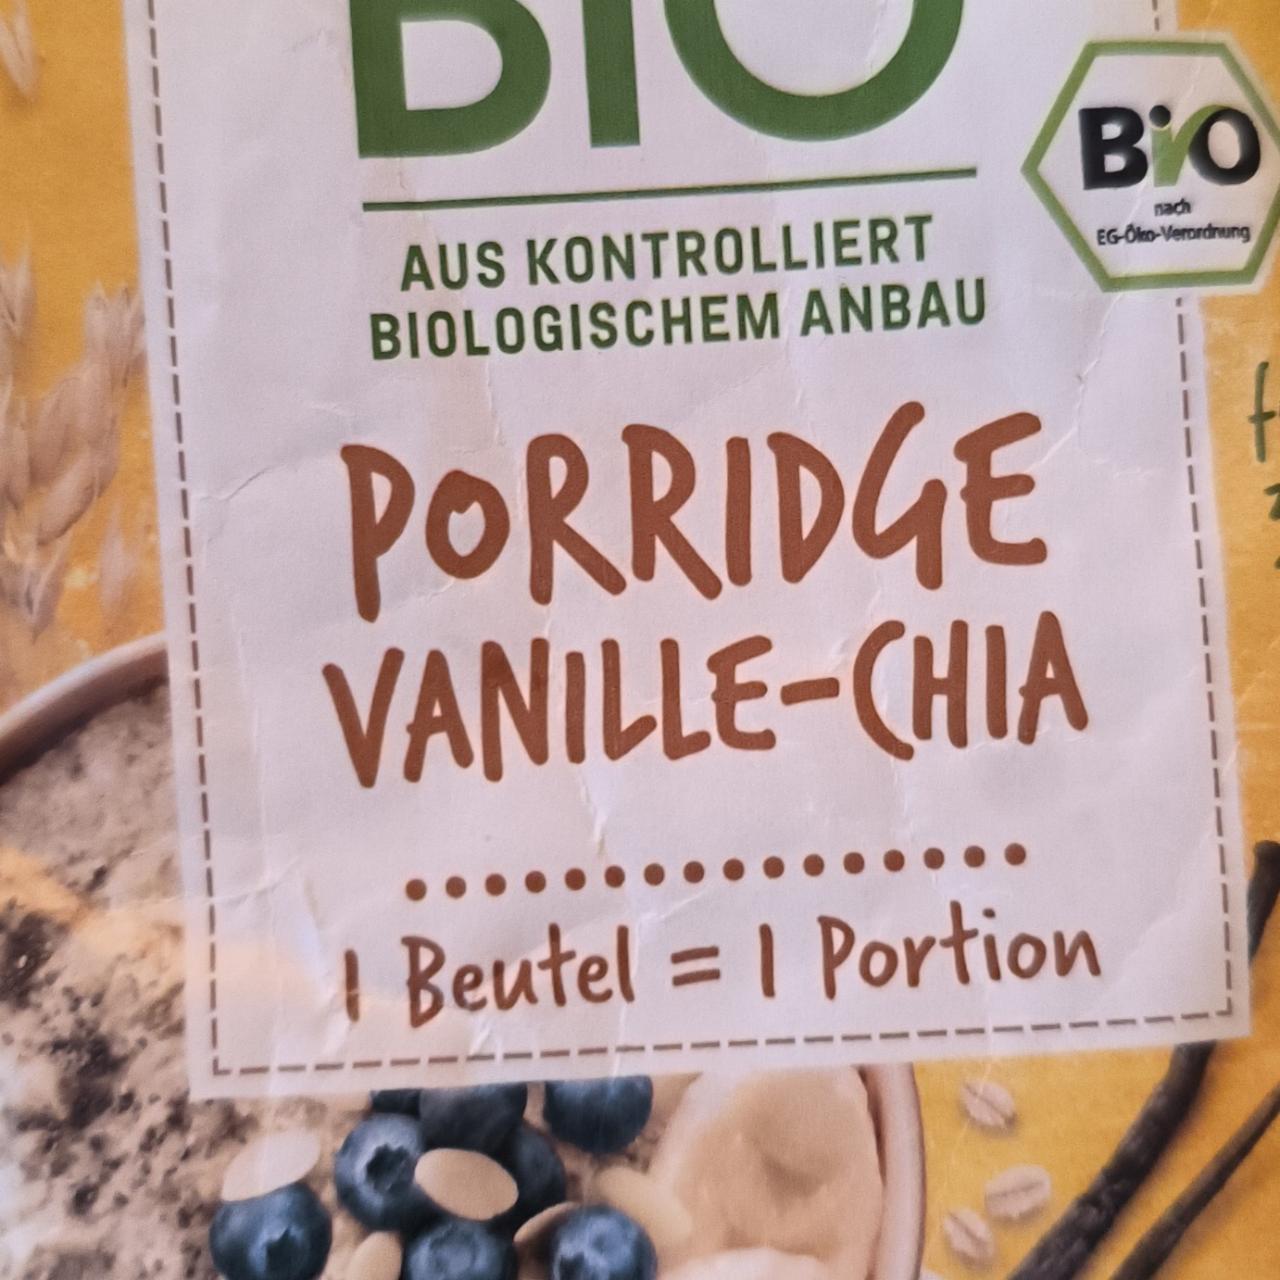 Zdjęcia - Ener Bio Porridge vanille chia